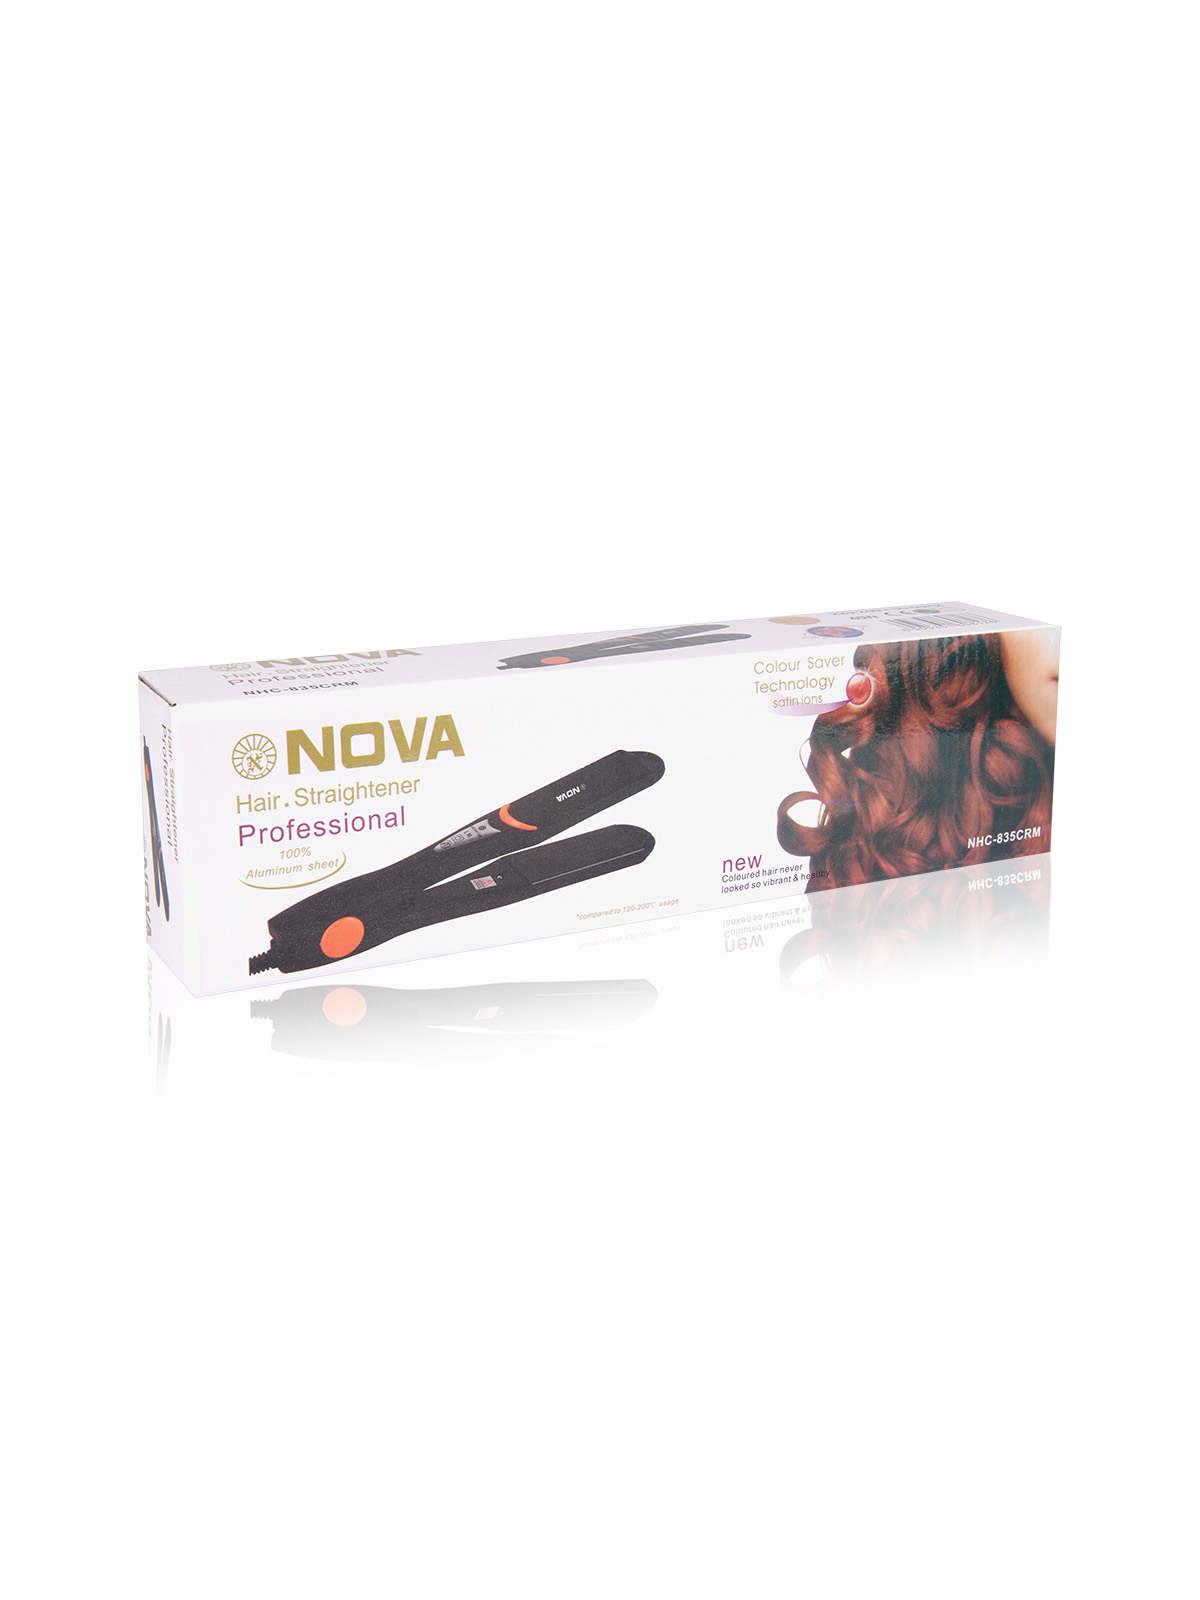 Утюжок для волос NOVA Professional Hair Straightener NHC-835CRM оптом - Фото №3